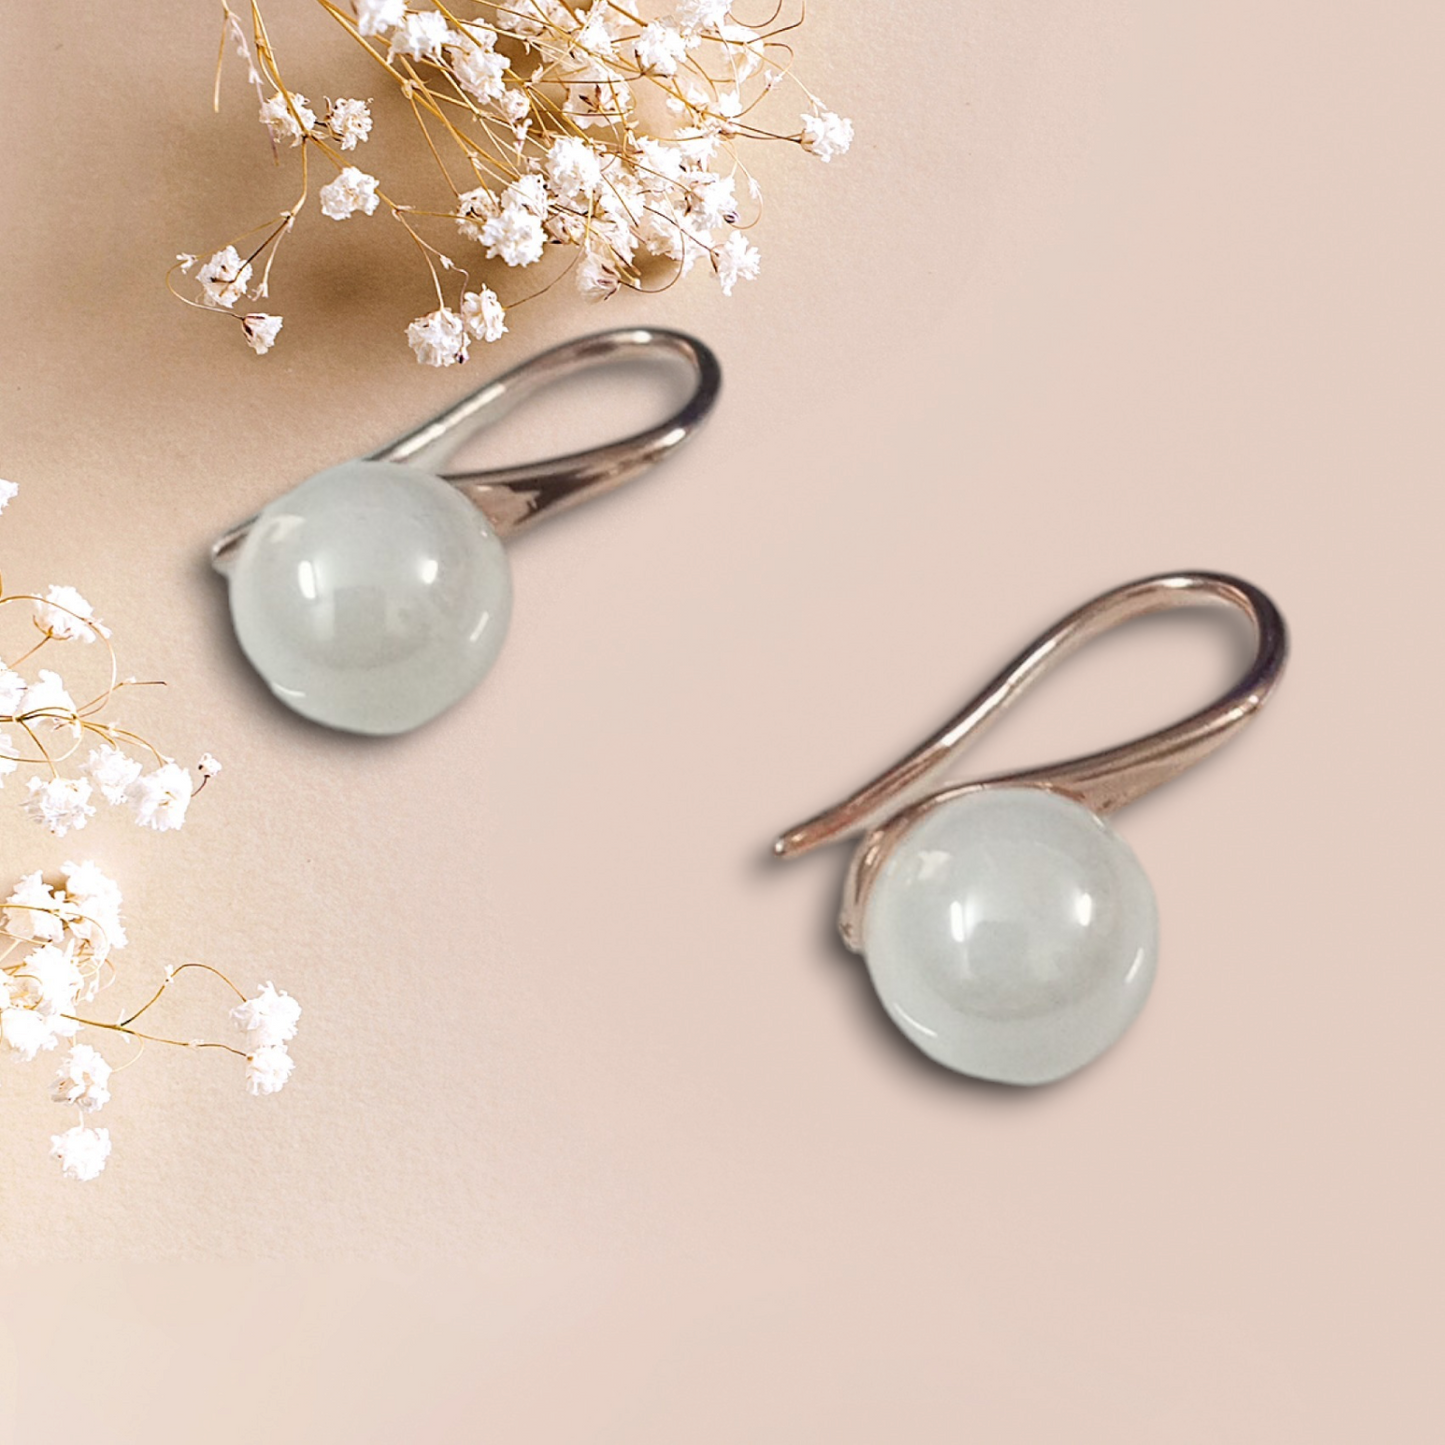 Small Pearl drop Earrings